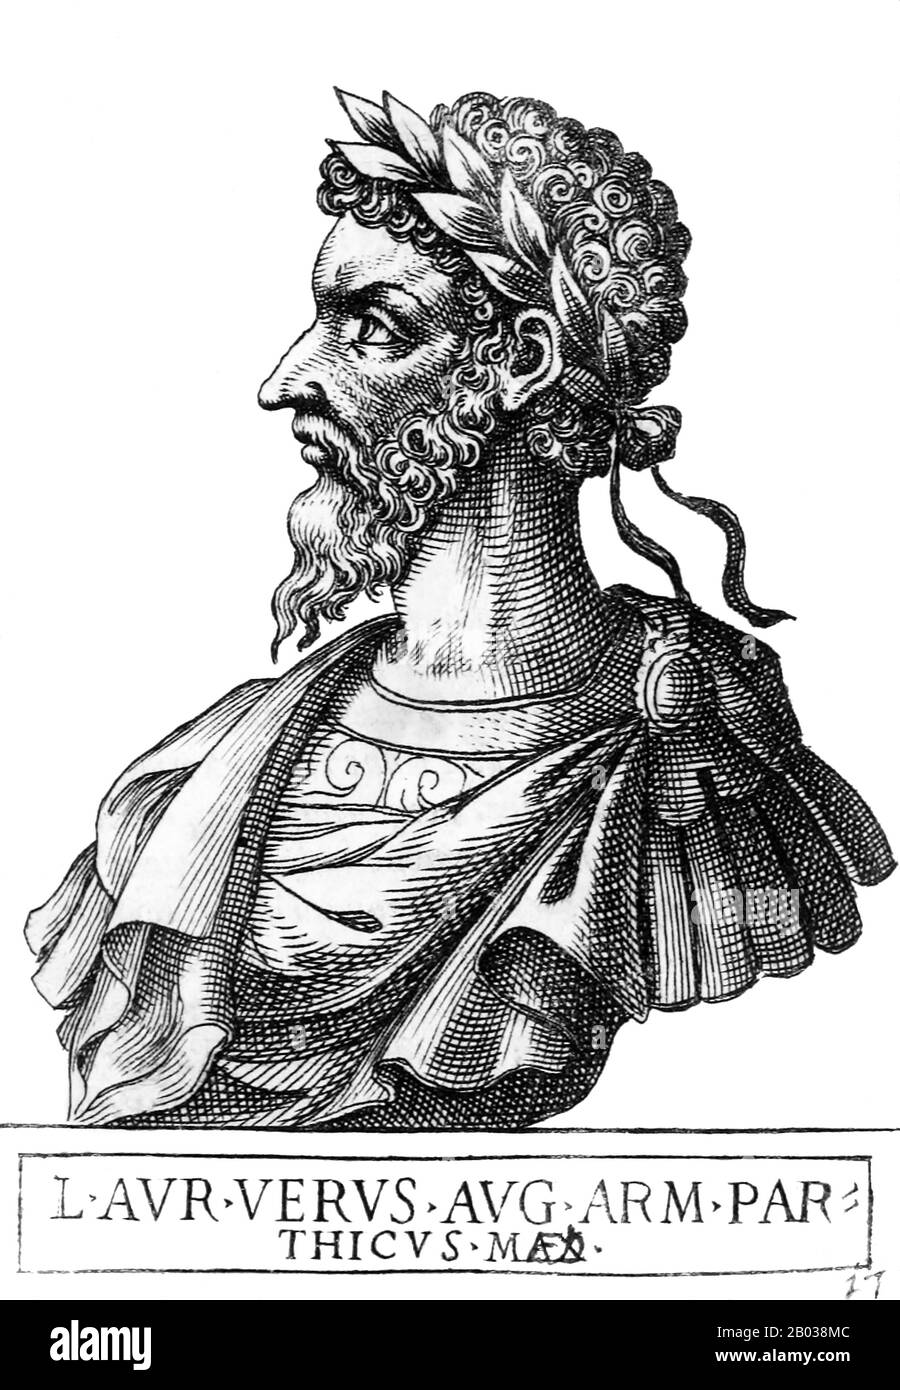 Der 130 geborene Luzius Ceionius Commodus (130-169) änderte seinen Namen in Luzius Aelius Commodus, als sein Vater von Hadrian als sein Erbe adoptiert wurde. Als Luzius' Vater, der denselben Namen teilte, 138 CE starb, wurde Luzius von Antoninus Pius neben Marcus Aurelius adoptiert. Luzius, der nun Luzius Aelius Aureius Commodus genannt wird, würde nach seiner Thronbesteigung zum Mitkaiser im Jahr 161 schließlich Luzius Verus werden, der die Macht mit Marcus Aurelius im Rahmen der Forderungen, die dieser an den römischen Senat stellte, teilte, als er Kaiser wurde. Während ihrer Regierungszeit besiegte das Reich ein erneut drängendes parthisches Reich und ließ den Kapit erlegen Stockfoto